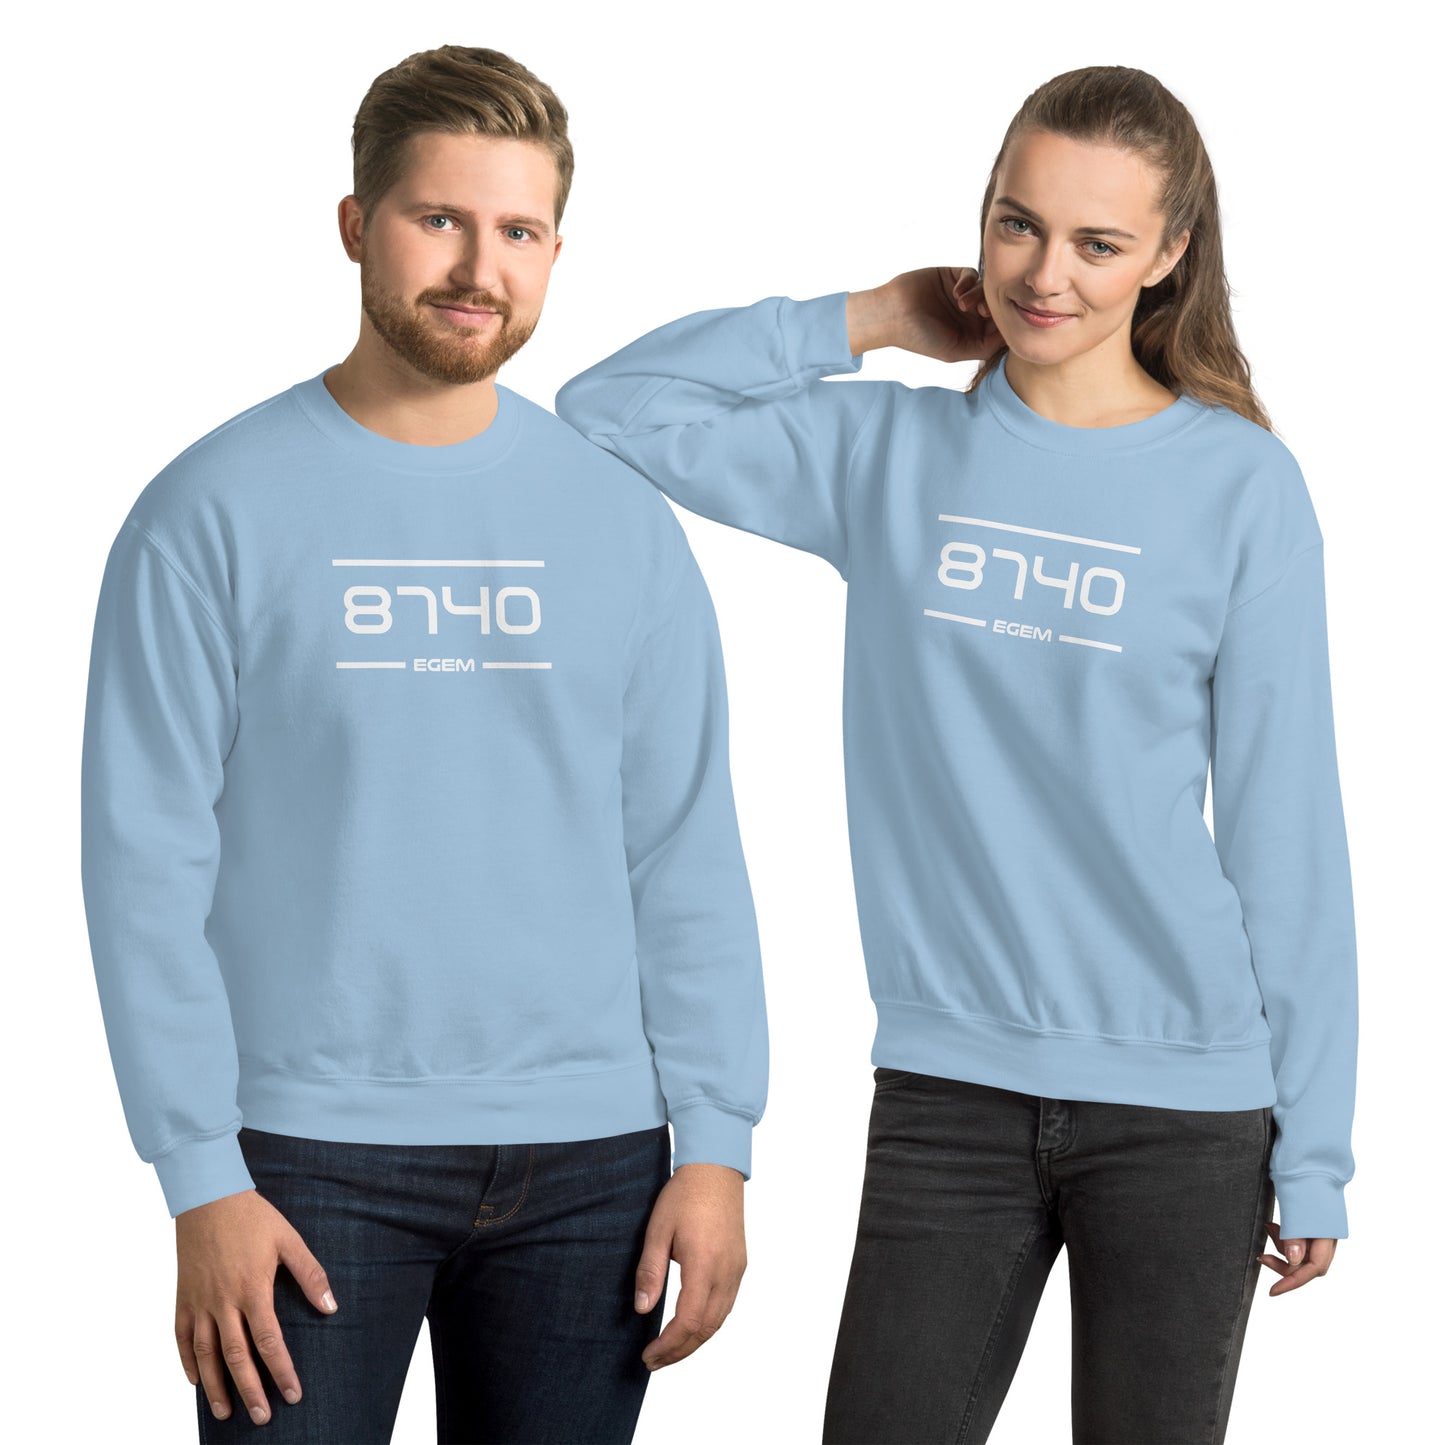 Sweater - 8740 - Egem (M/V)